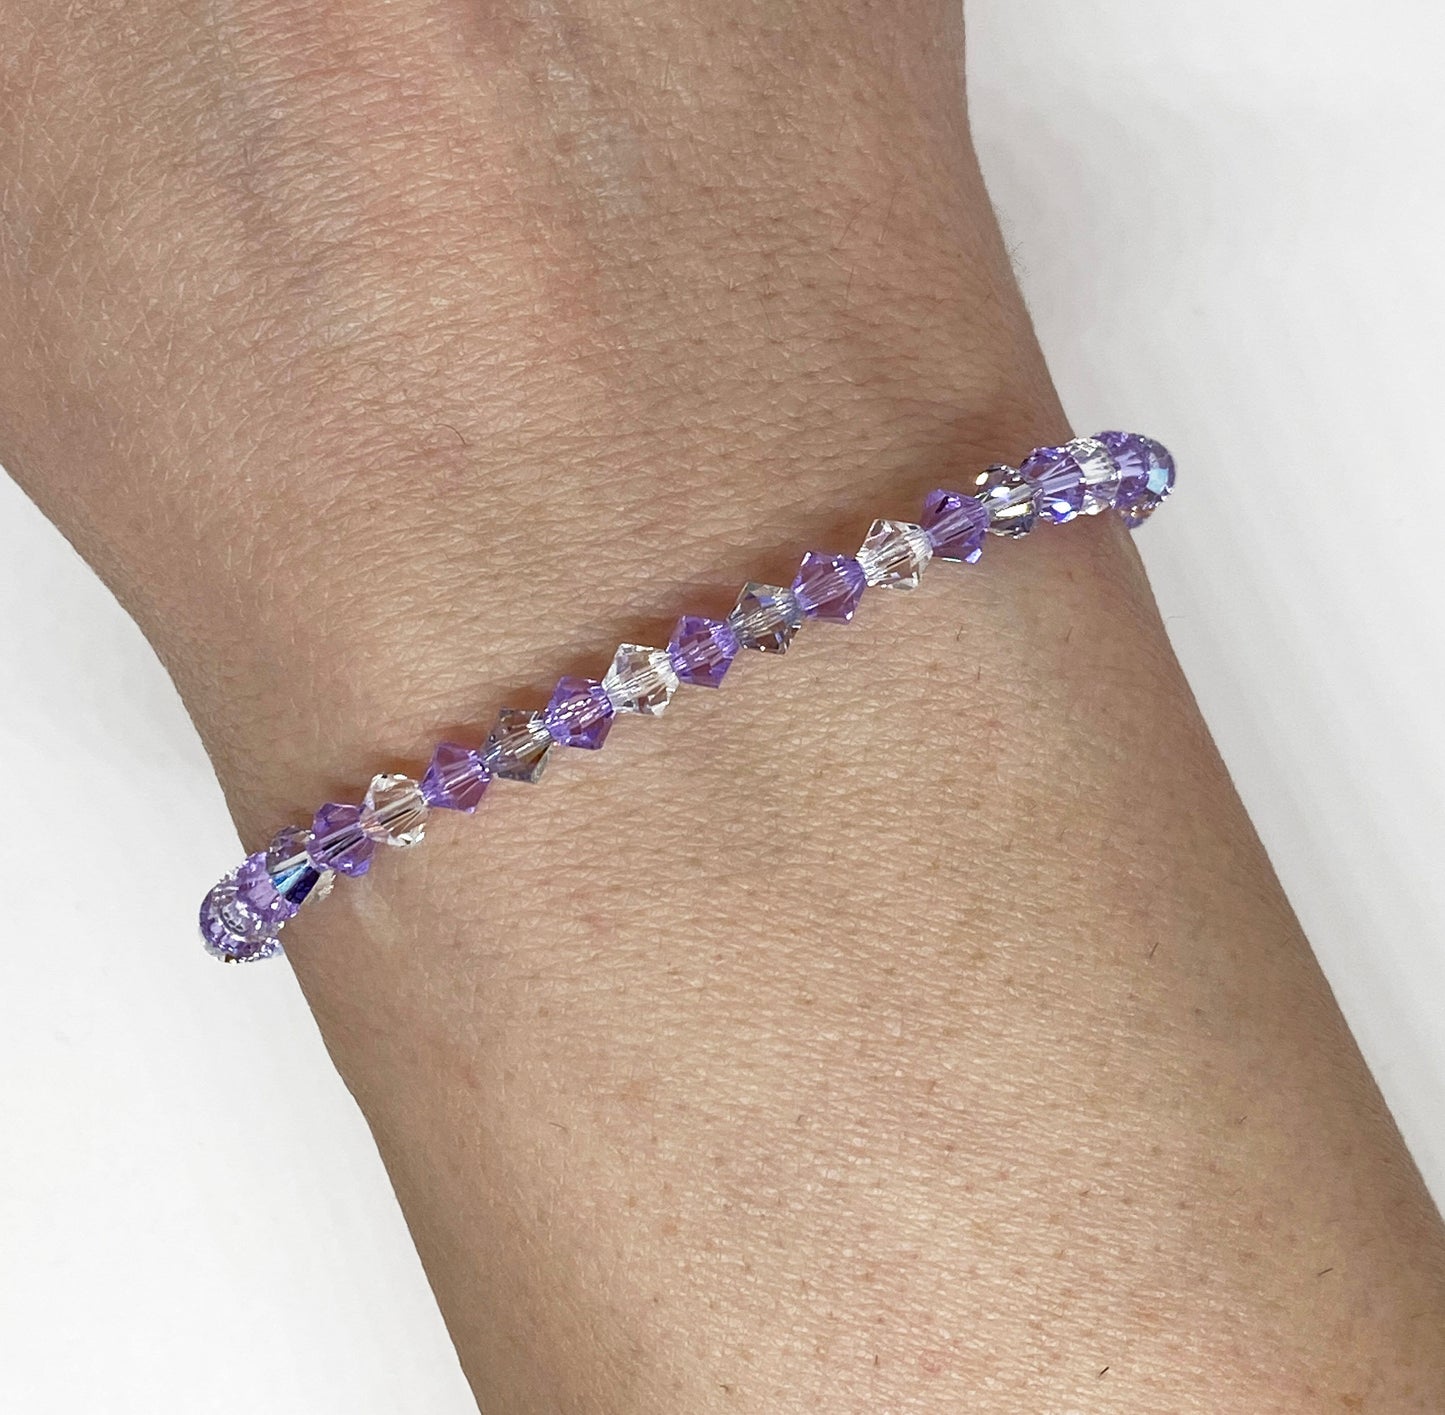 Swarovski Crystal Accent Bracelet in Violet Shimmer - with Violet and Smoky Mauve Swarovski Crystals